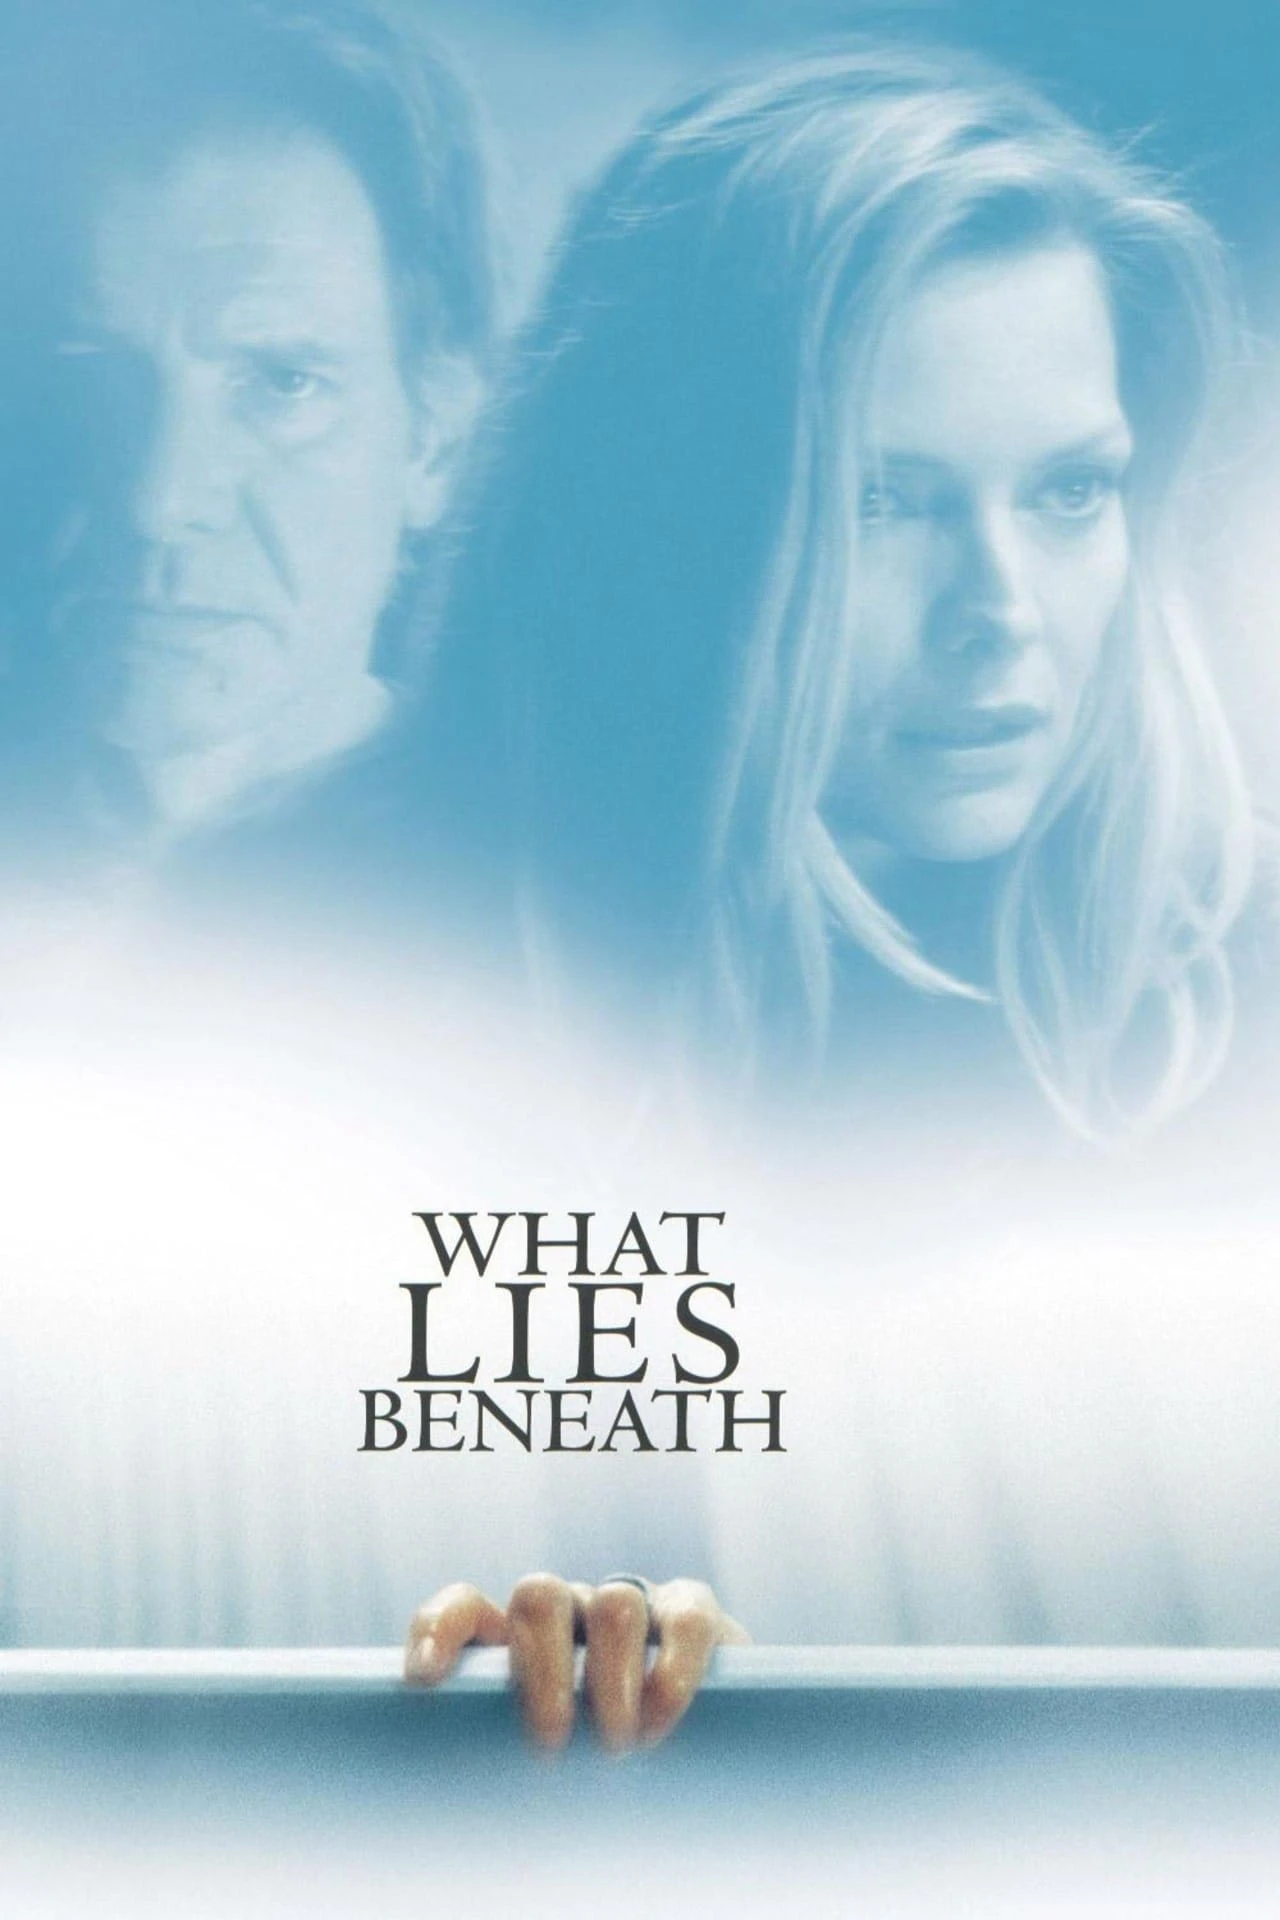 What Lies Beneath | What Lies Beneath (2000)